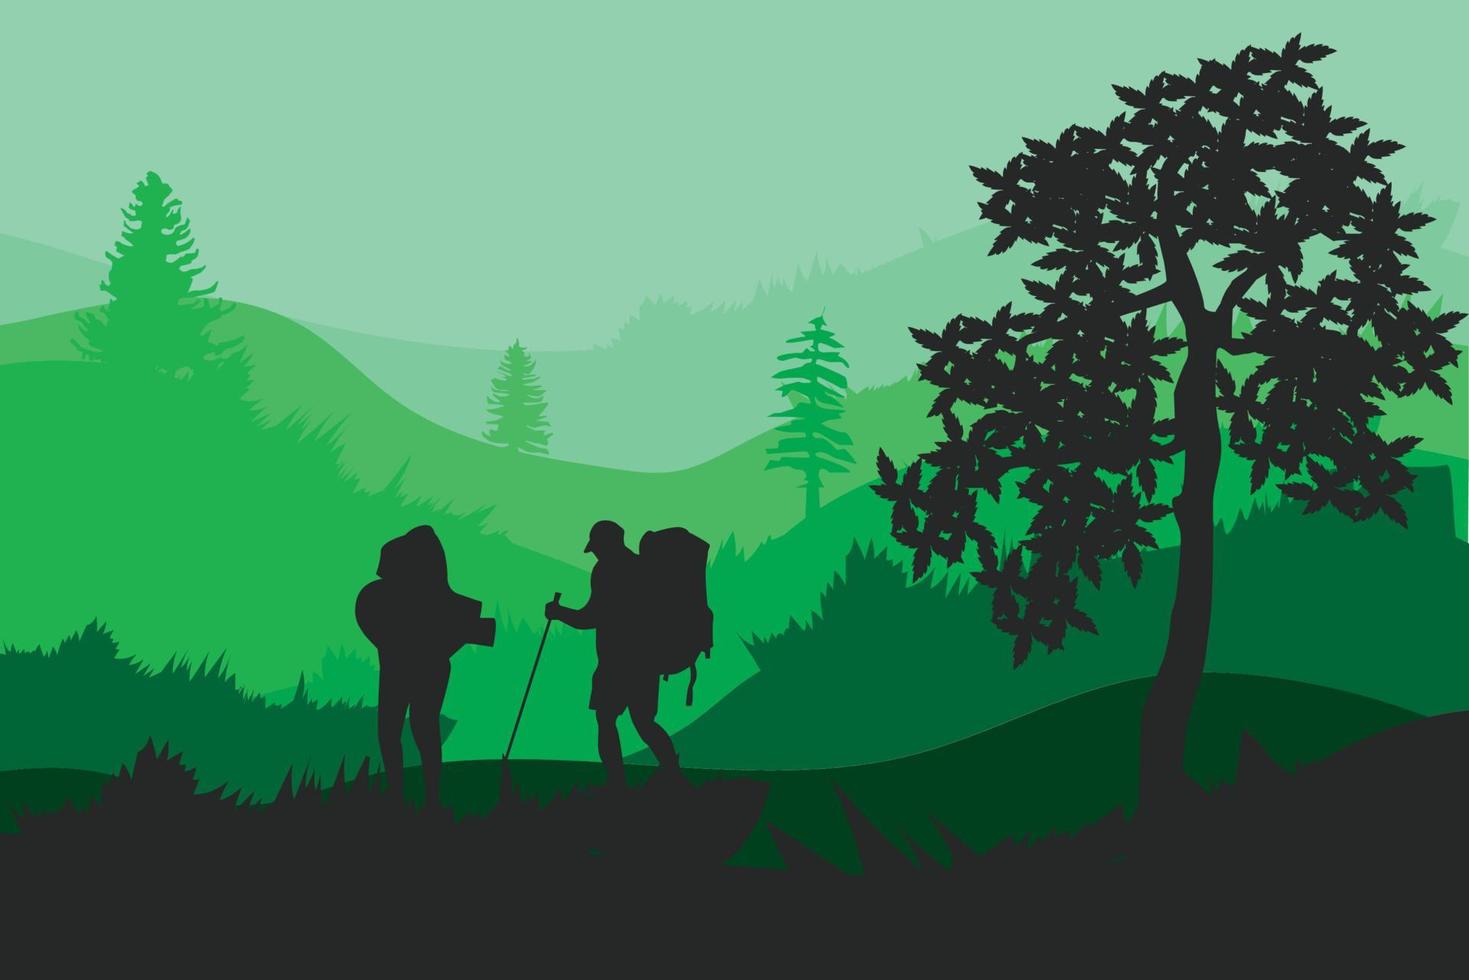 1 team vandrare, backpacker, turister stående i berg landskap med skog under solnedgång himmel, med moln och flygande fåglar, träd vektor